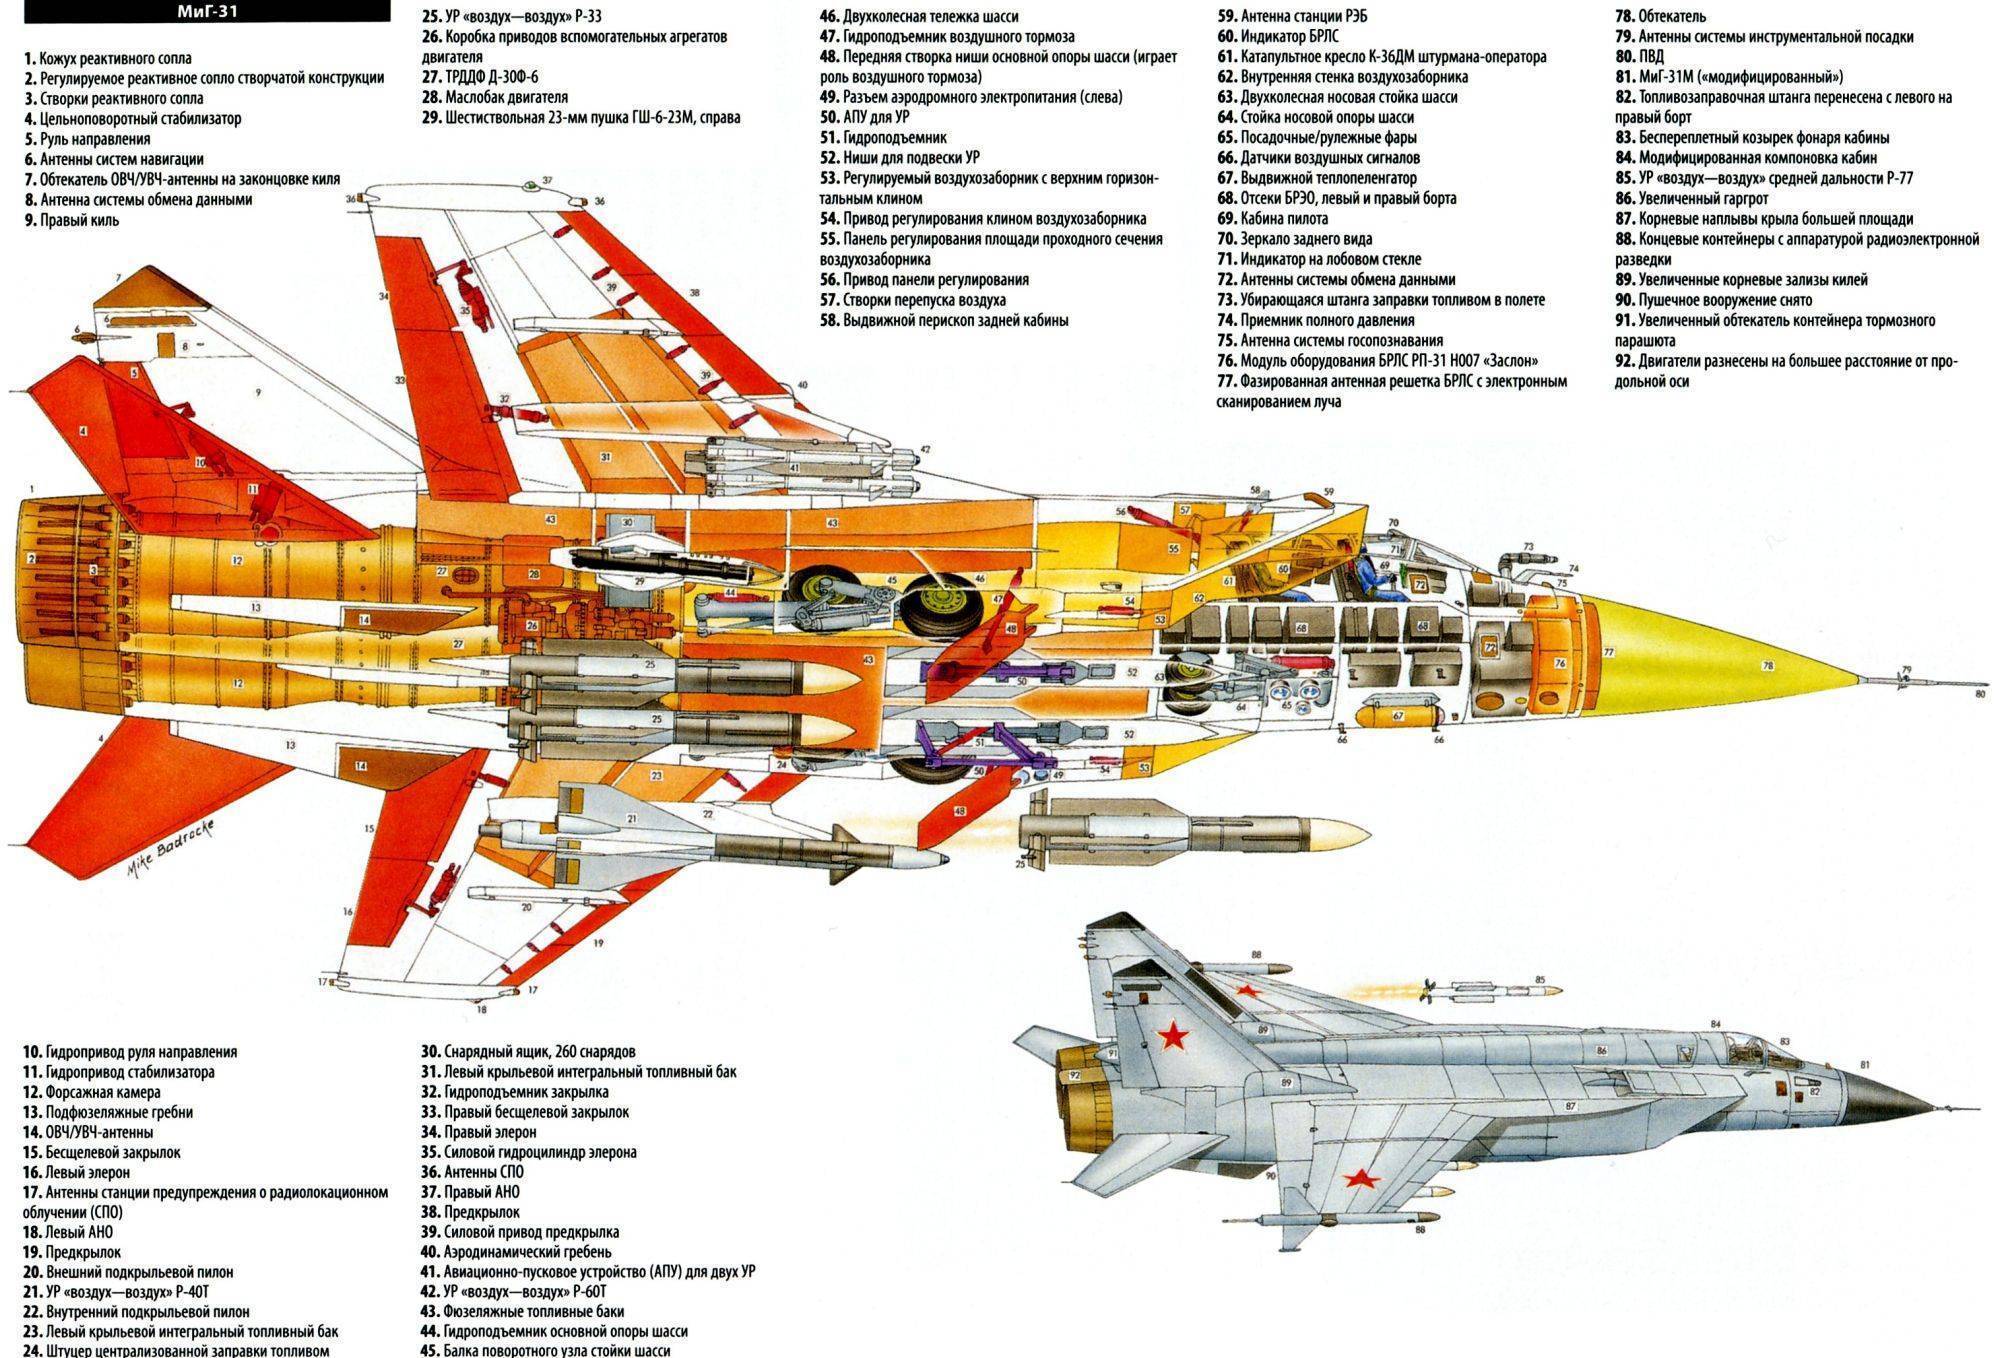 «гениальность — в интегрированной компоновке»: какую роль в отечественной авиации сыграло создание истребителя су-27 — рт на русском